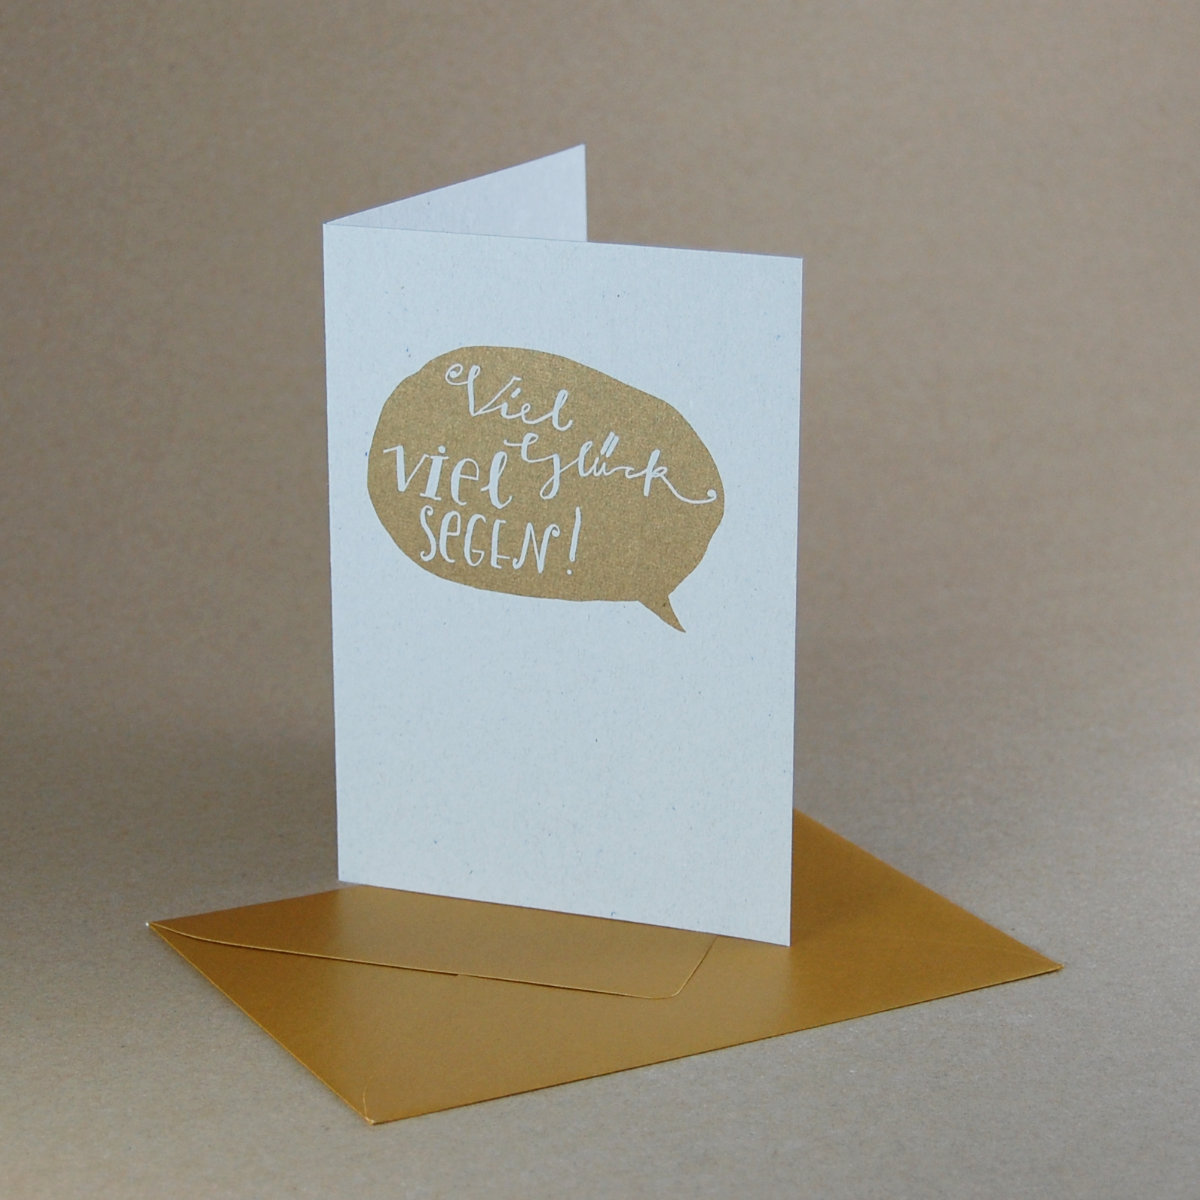 Viel Glück - Viel Segen! Recycling-Glückwunschkarten mit goldenem Druck und goldenen Kuverts